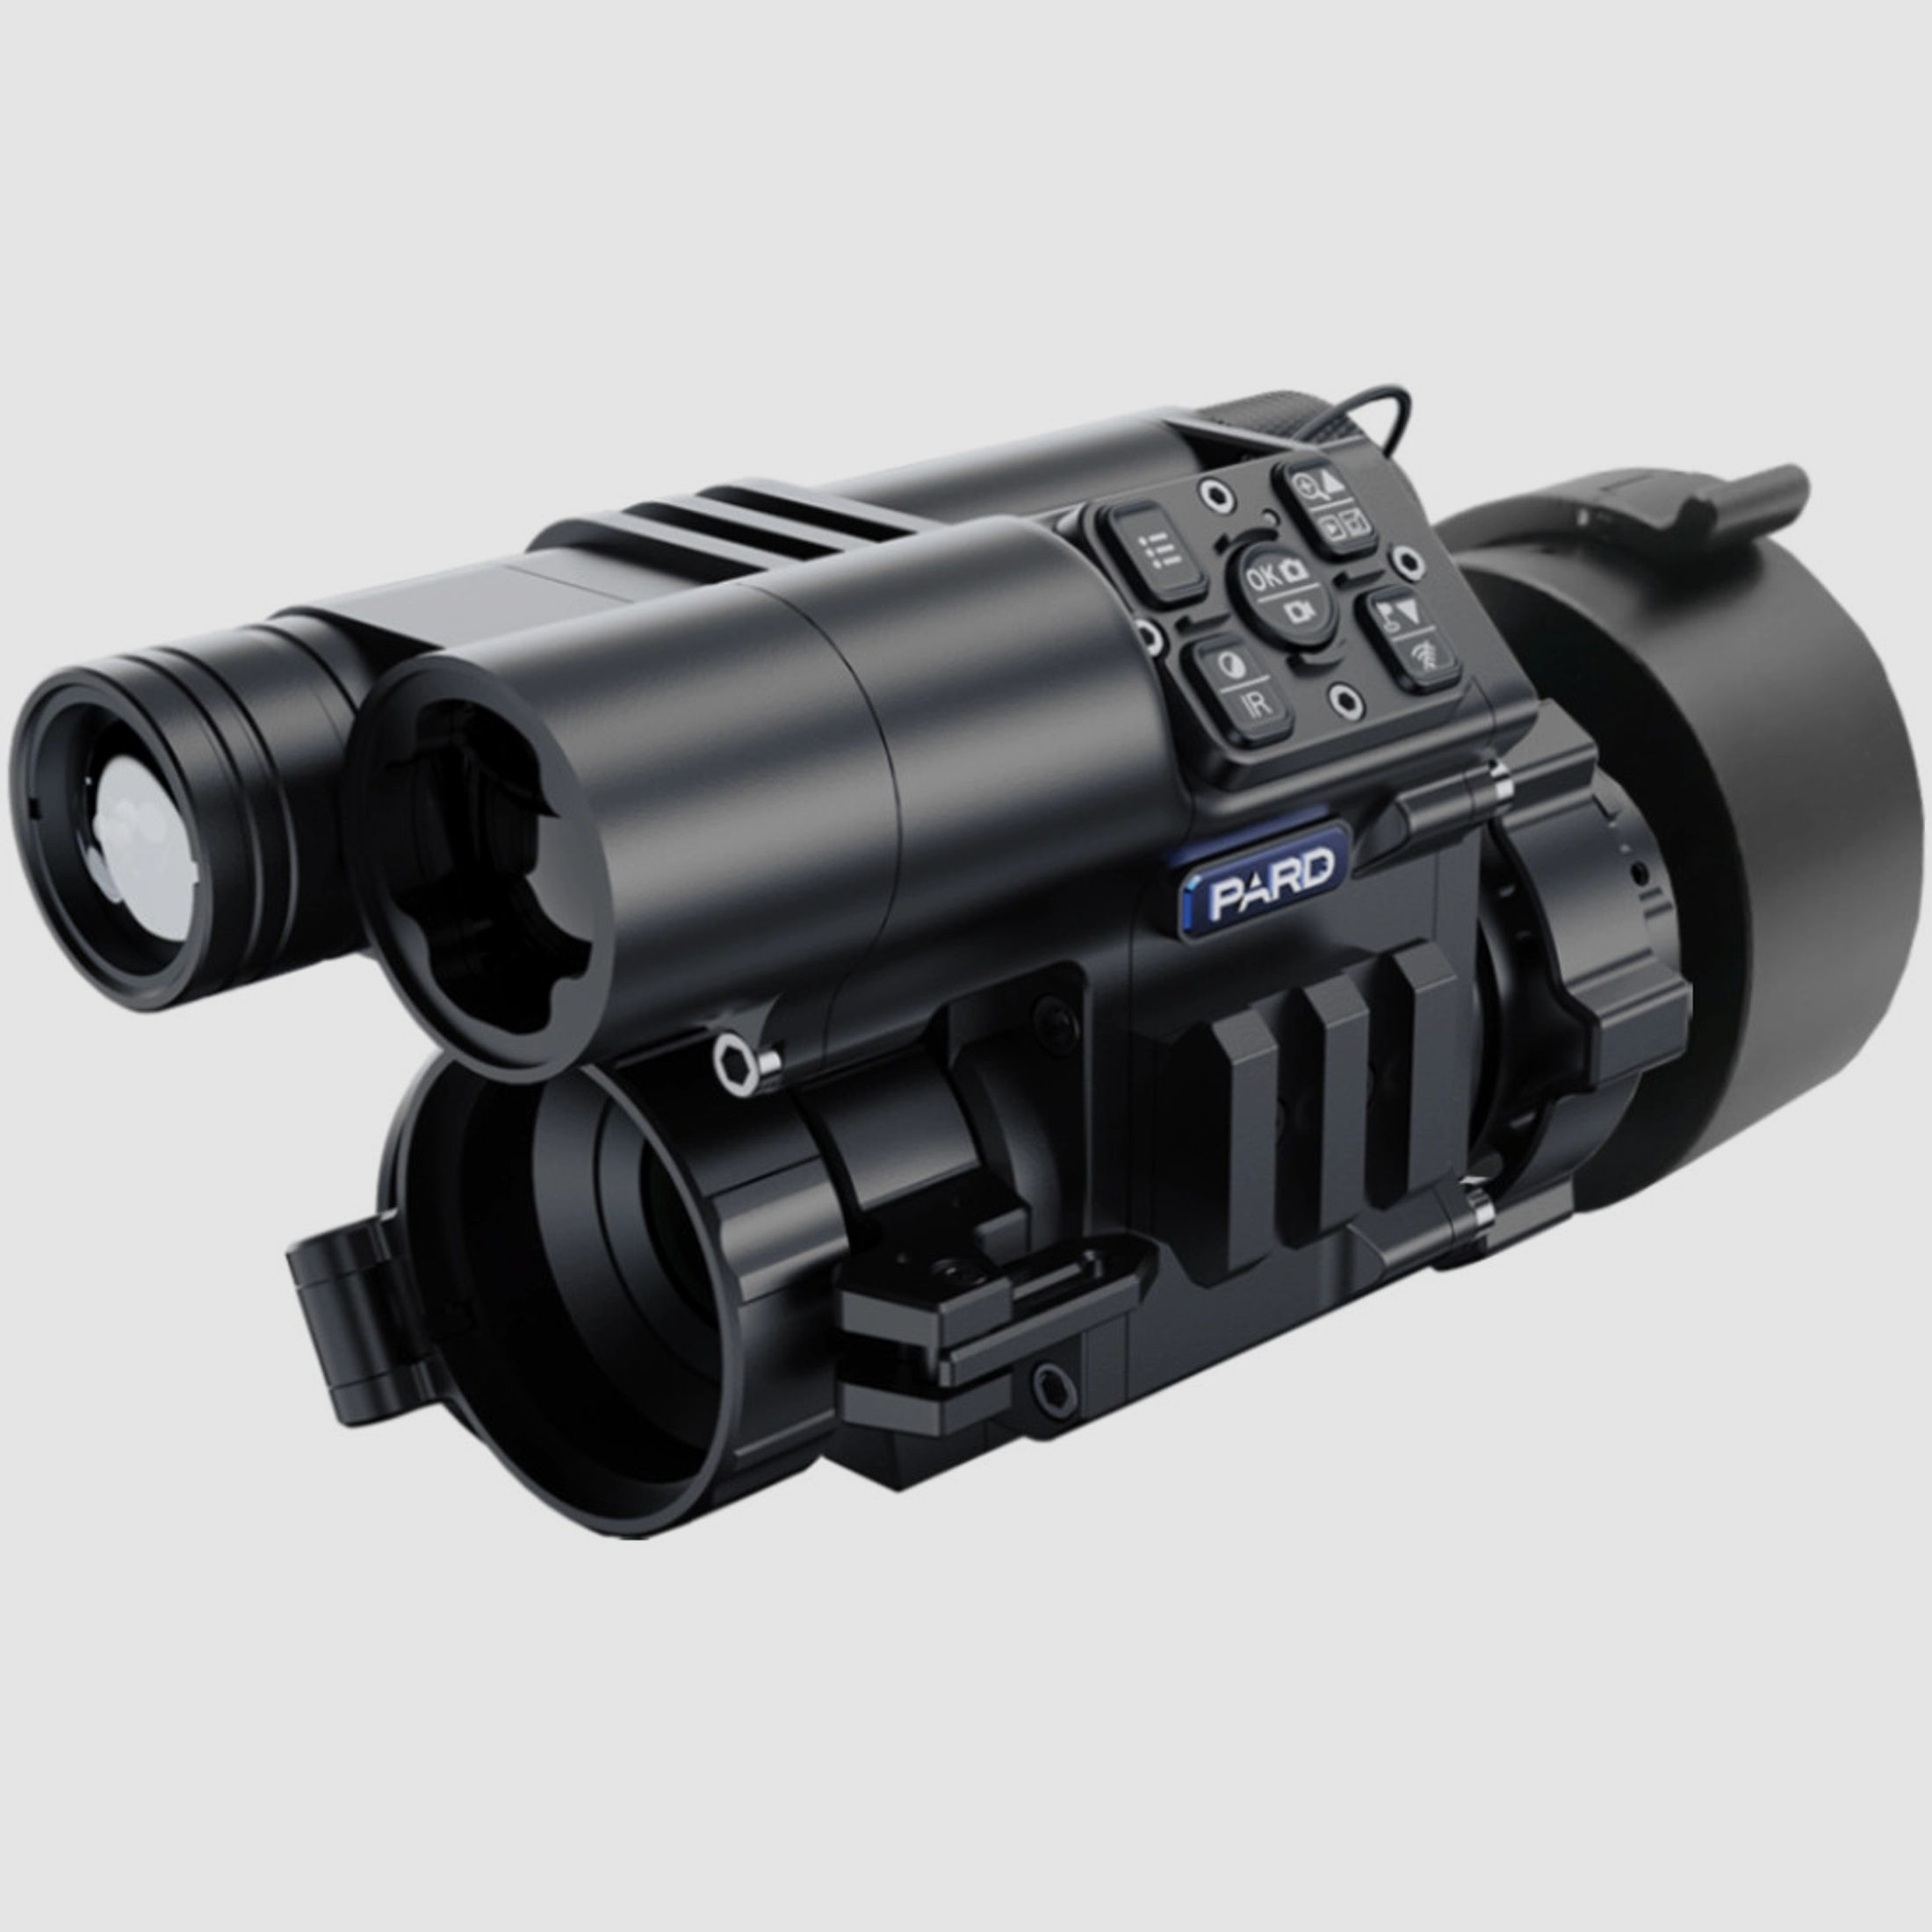 PARD FD1 Nachtsicht 3 in 1 Vorsatz, Monokular & Zielfernrohr - 940 nm mit LRF 62 - 46 mm PARD Universaladapter (inkl. Reduzierringen)